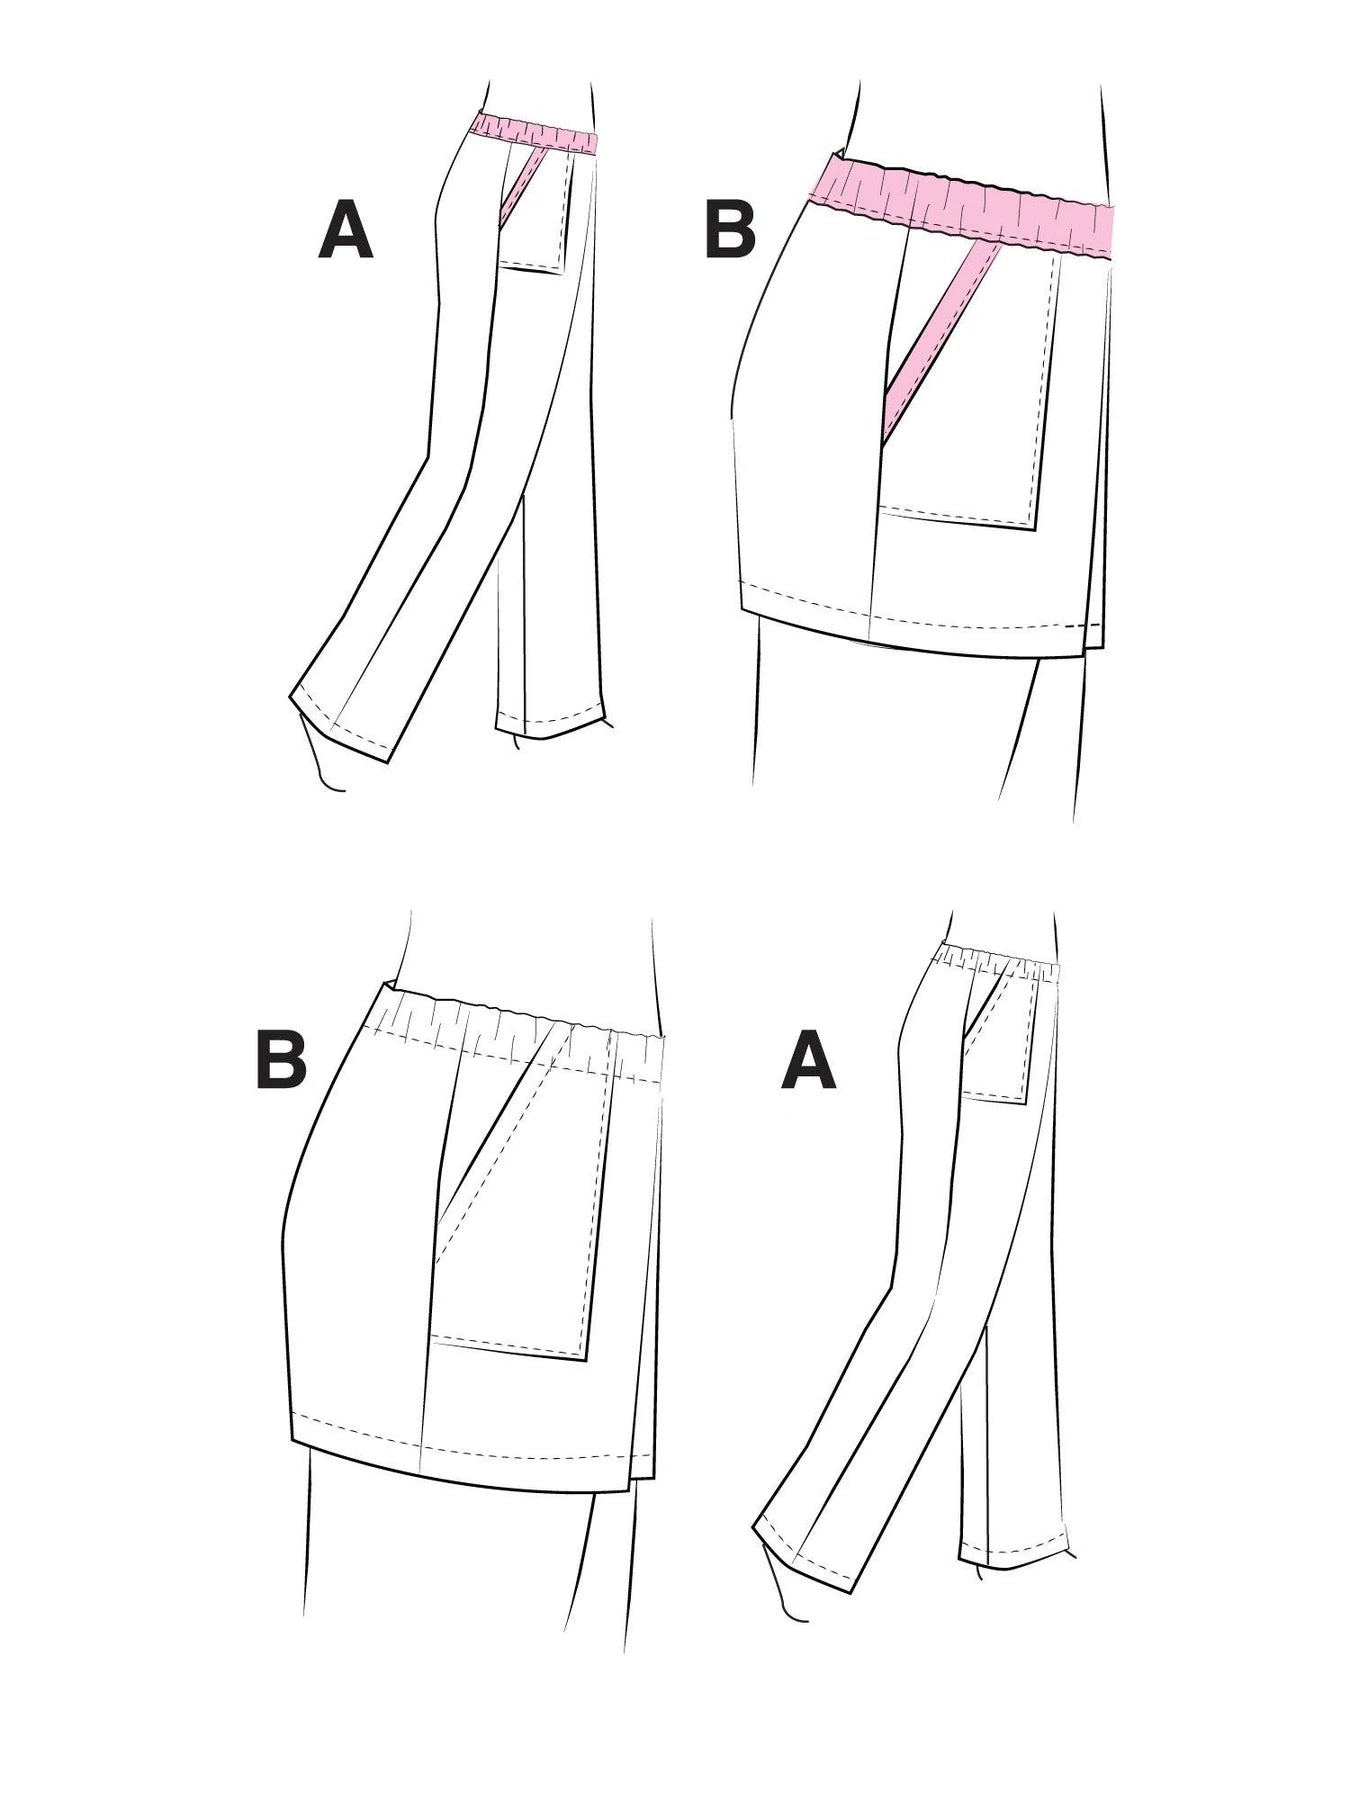 Elastic waist pants 3243 | Paper pattern - Jalie